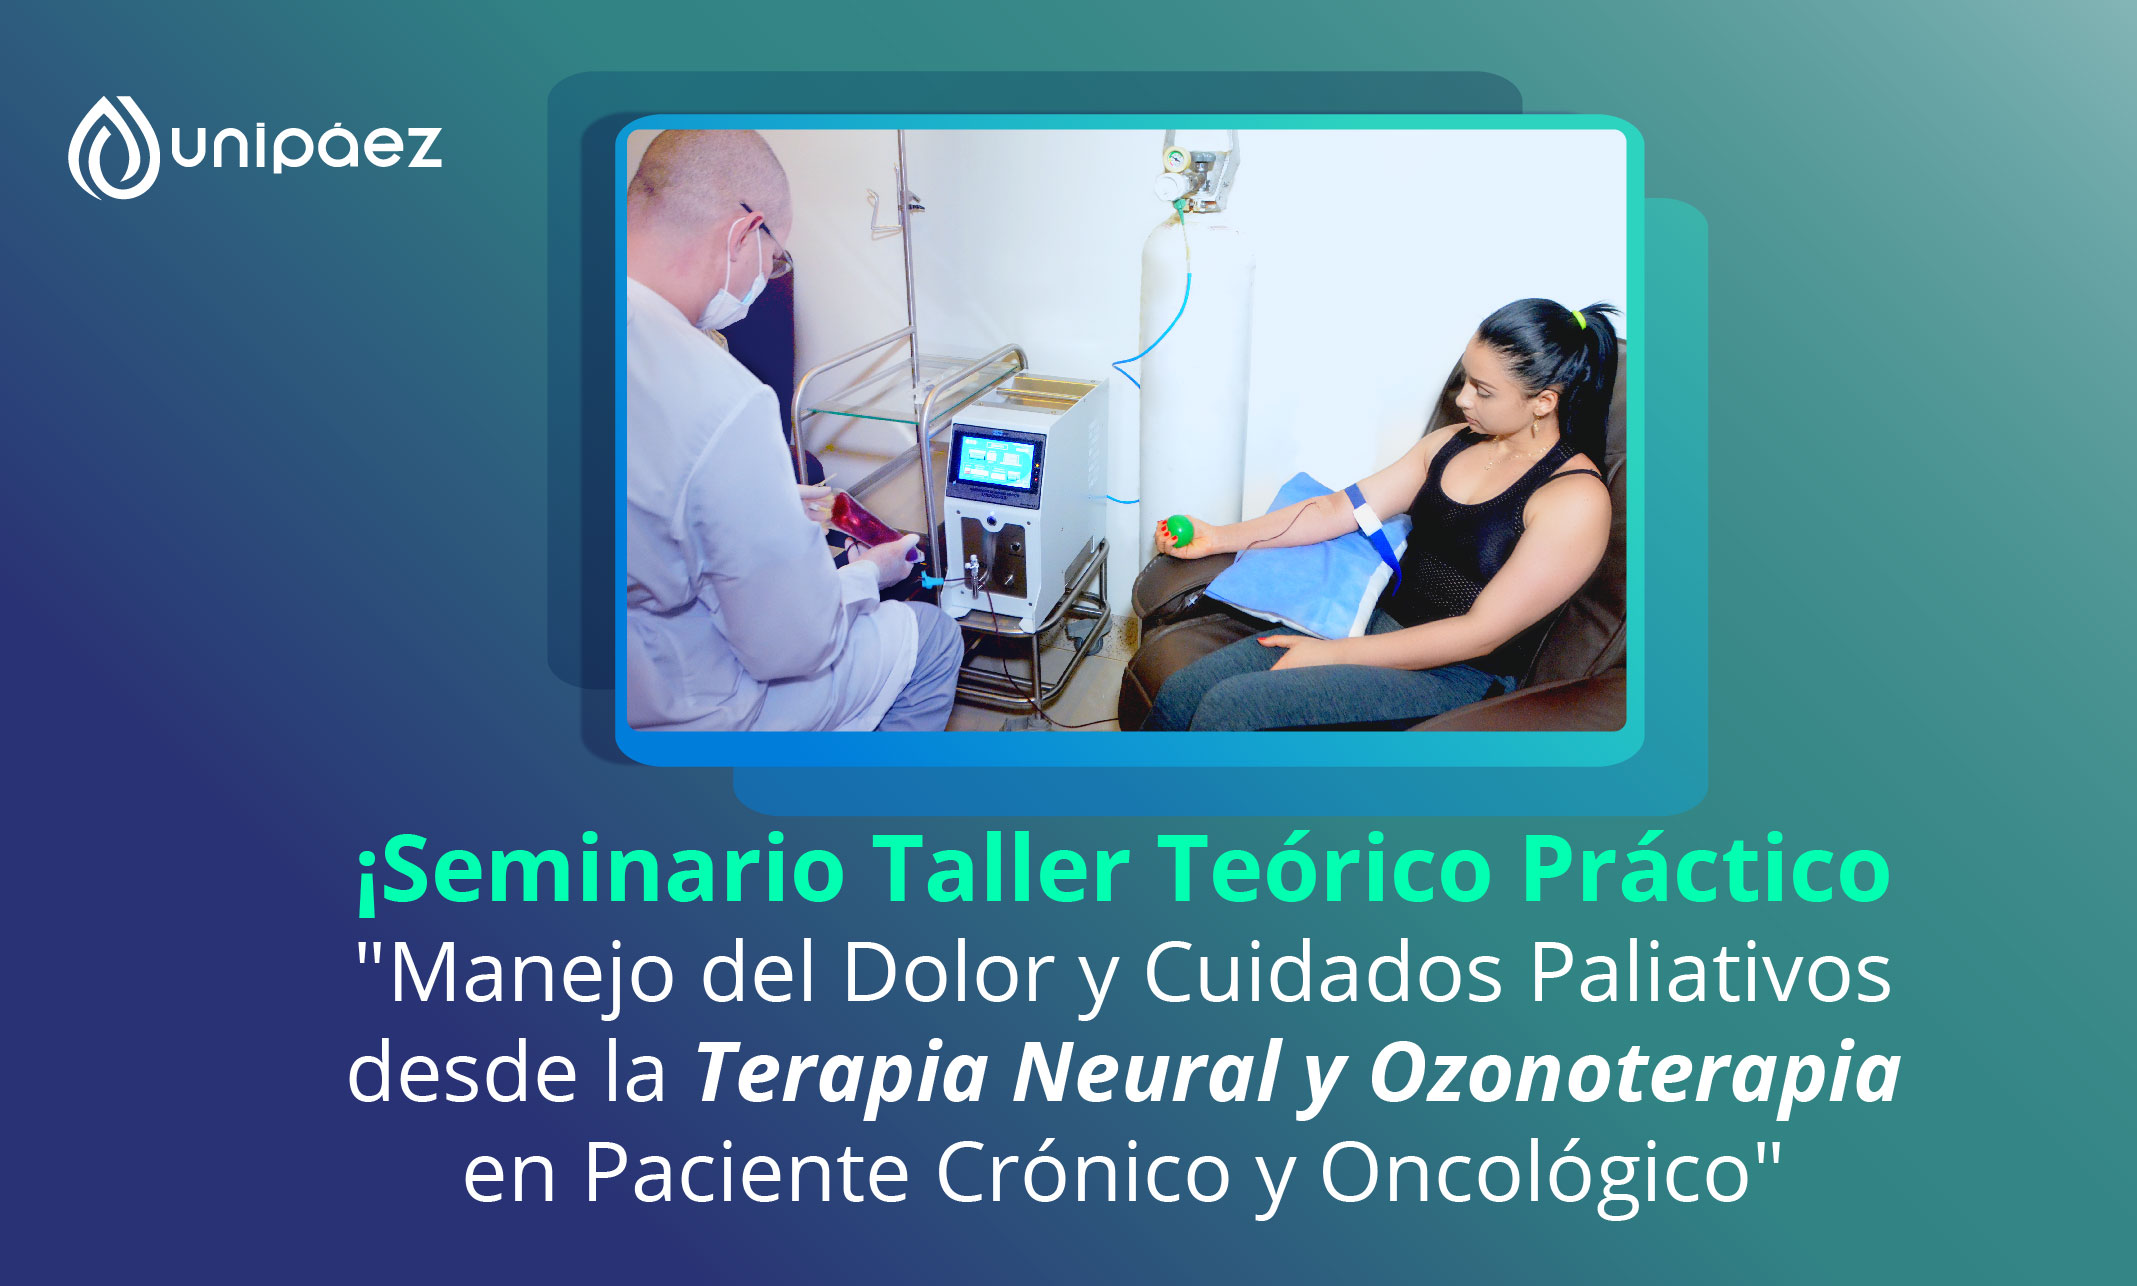 Seminario Taller Teórico Práctico “Manejo del Dolor y Cuidados Paliativos desde la Terapia Neural y Ozonoterapia en Paciente Crónico y Oncológico”